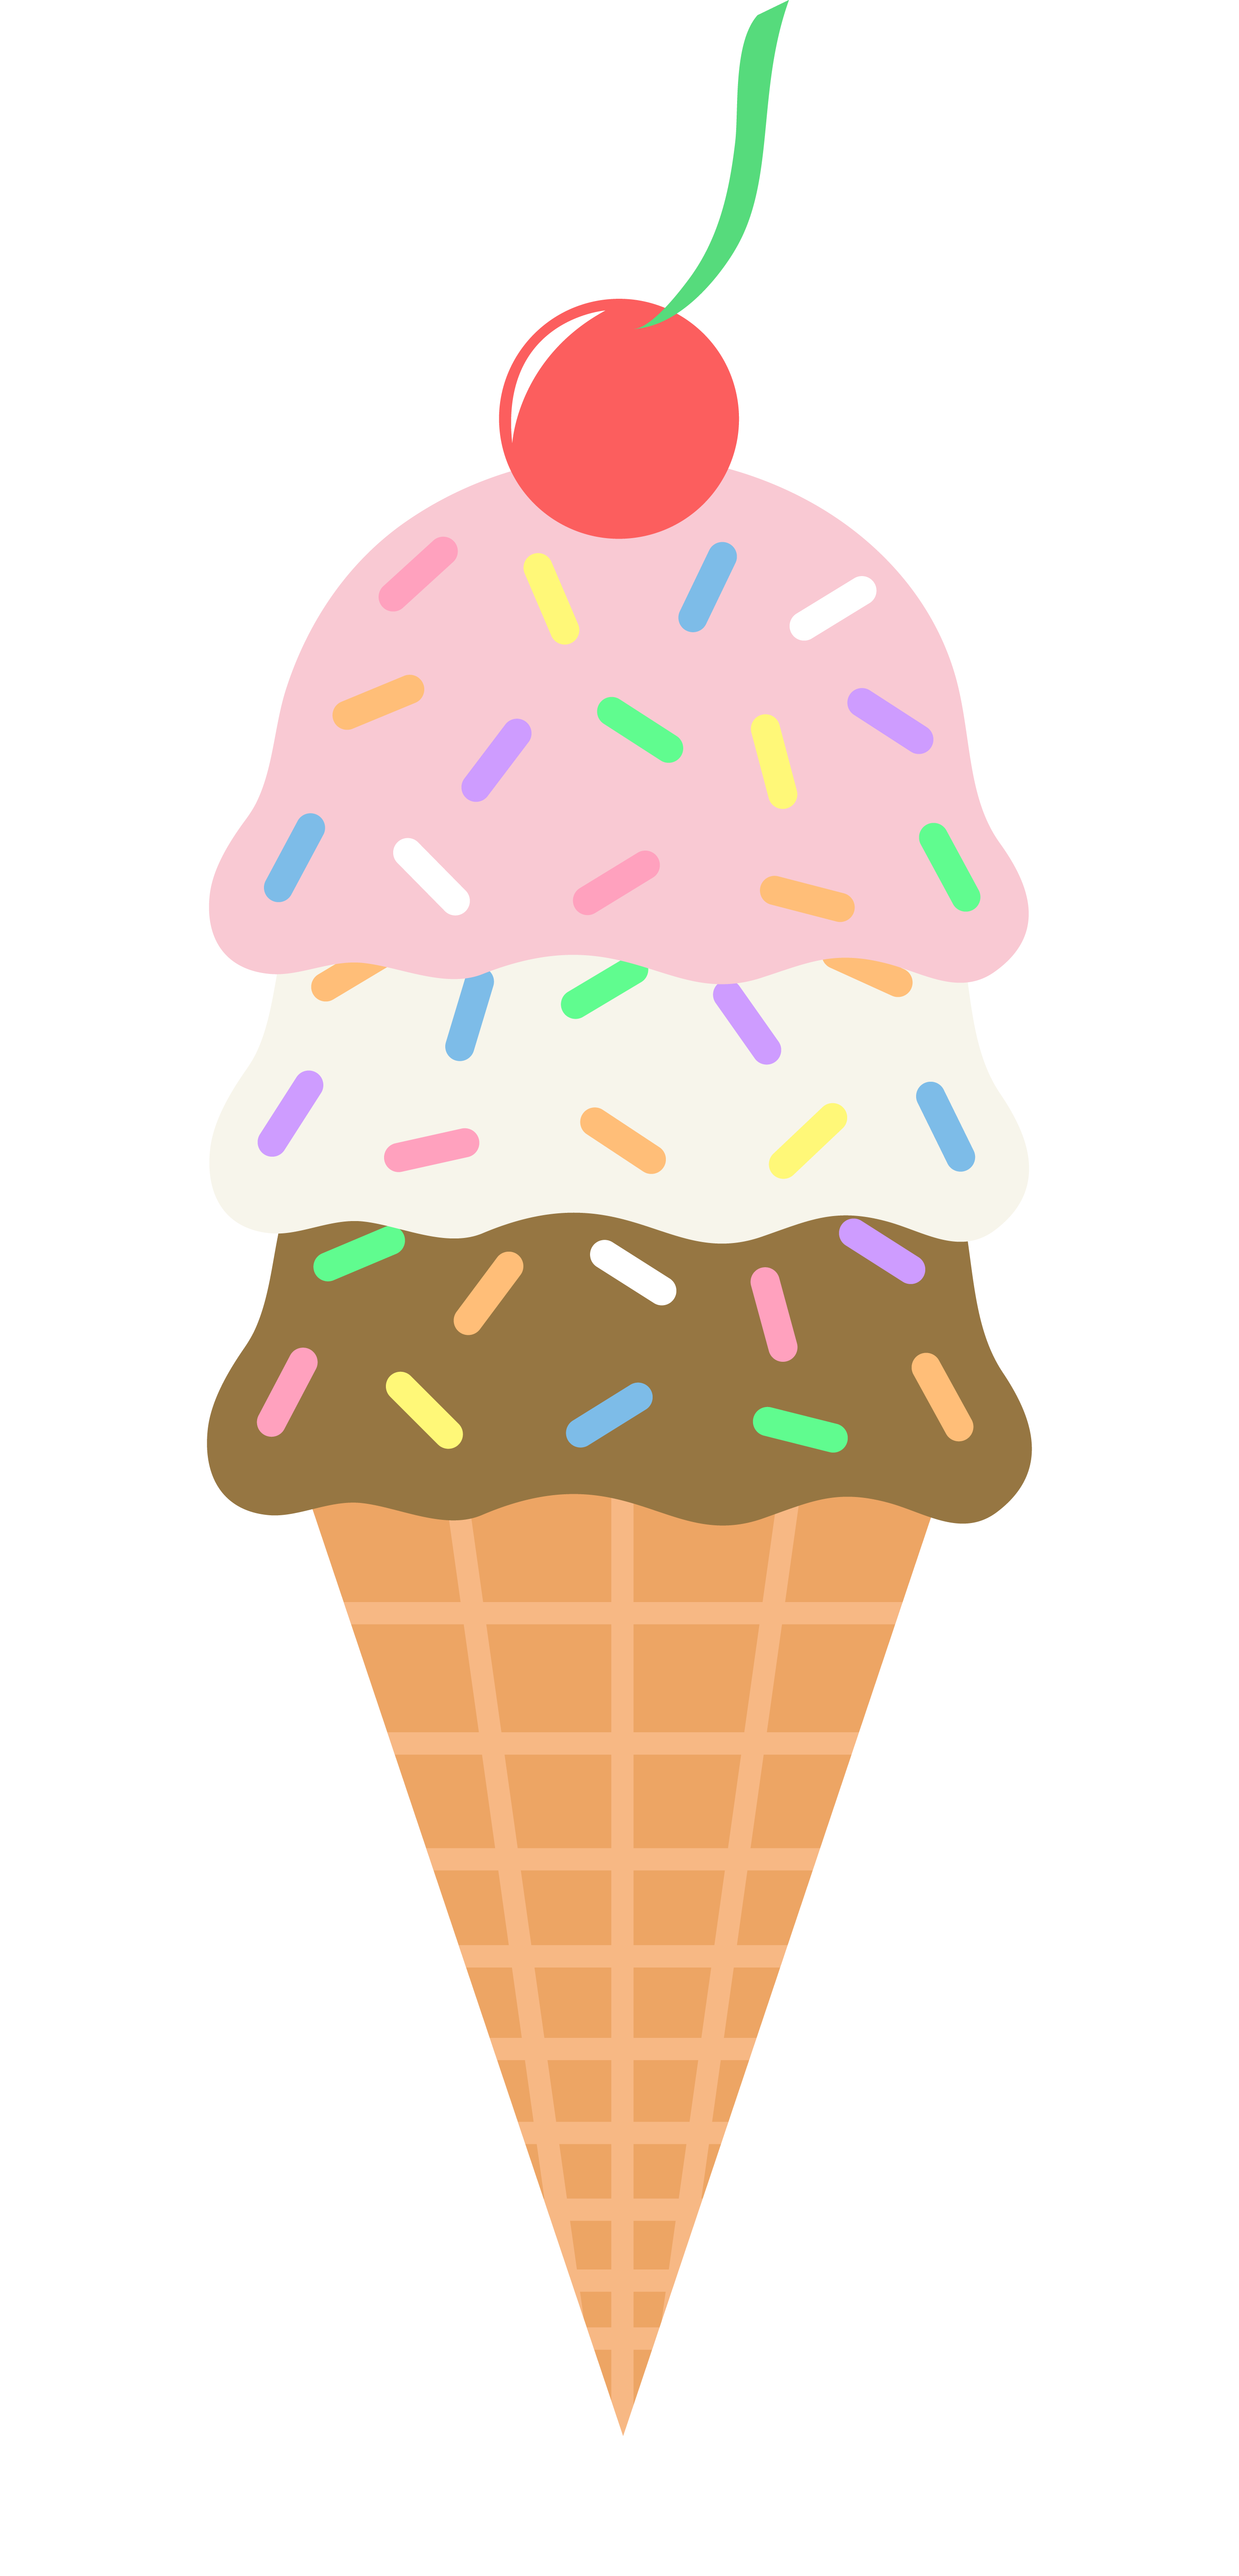 ice cream sundae images clip art - photo #23